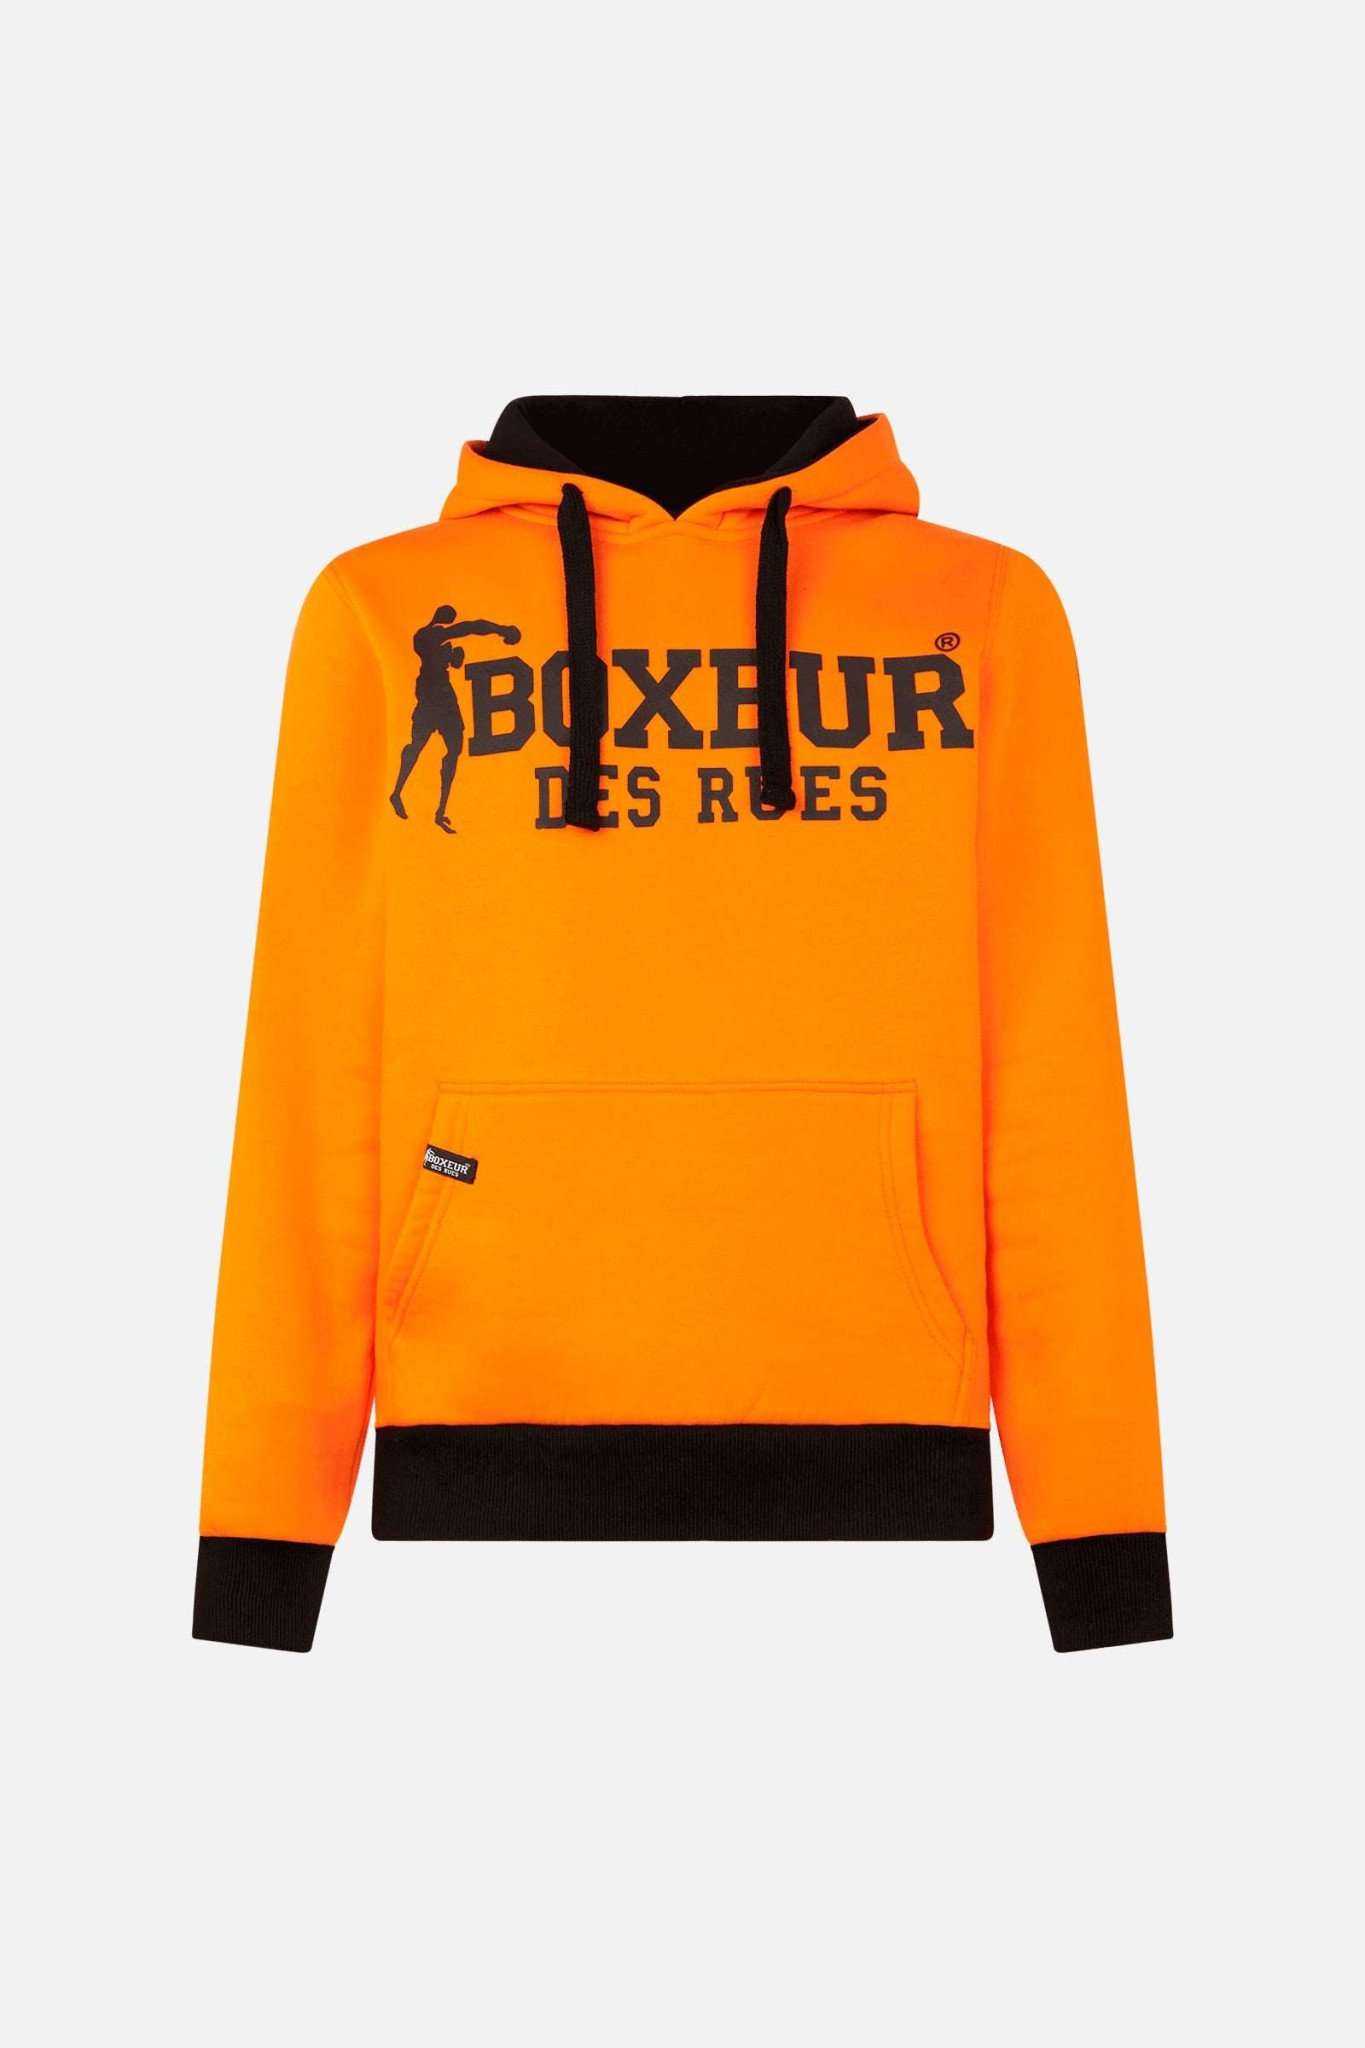 Man Hoodie Sweatshirt in Orange Kapuzenpullover Boxeur des Rues   